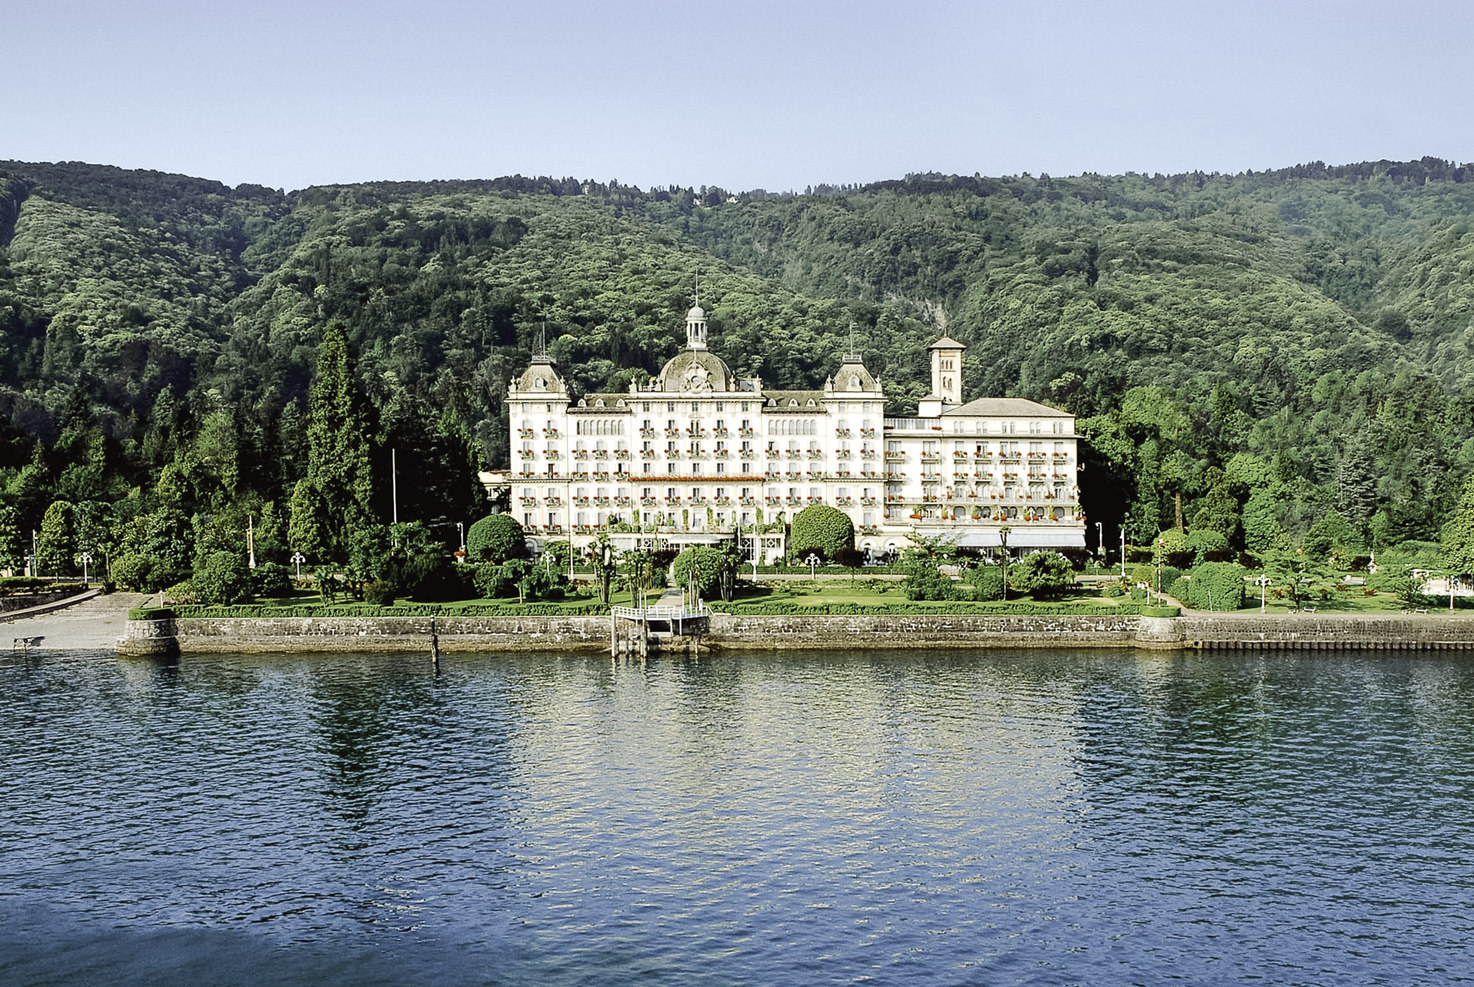 Grand Hotel des Iles Borromees, Lake Maggiore